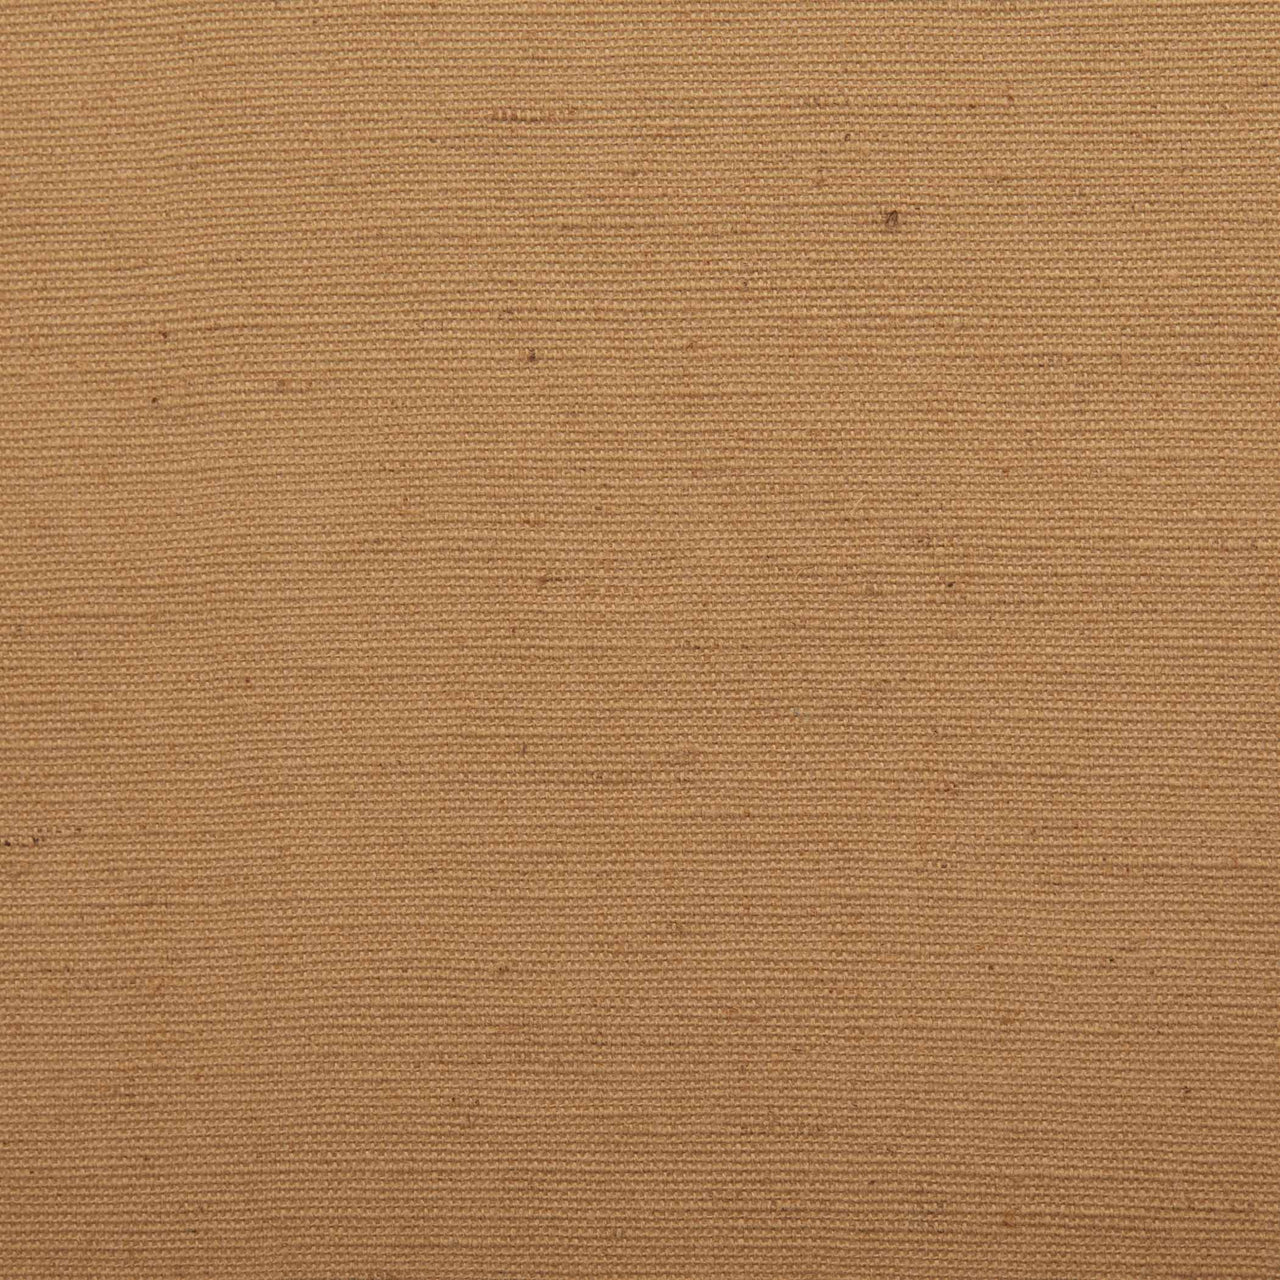 Simple Life Flax Khaki Prairie Swag Curtain Set of 2 36x36x18 VHC Brands